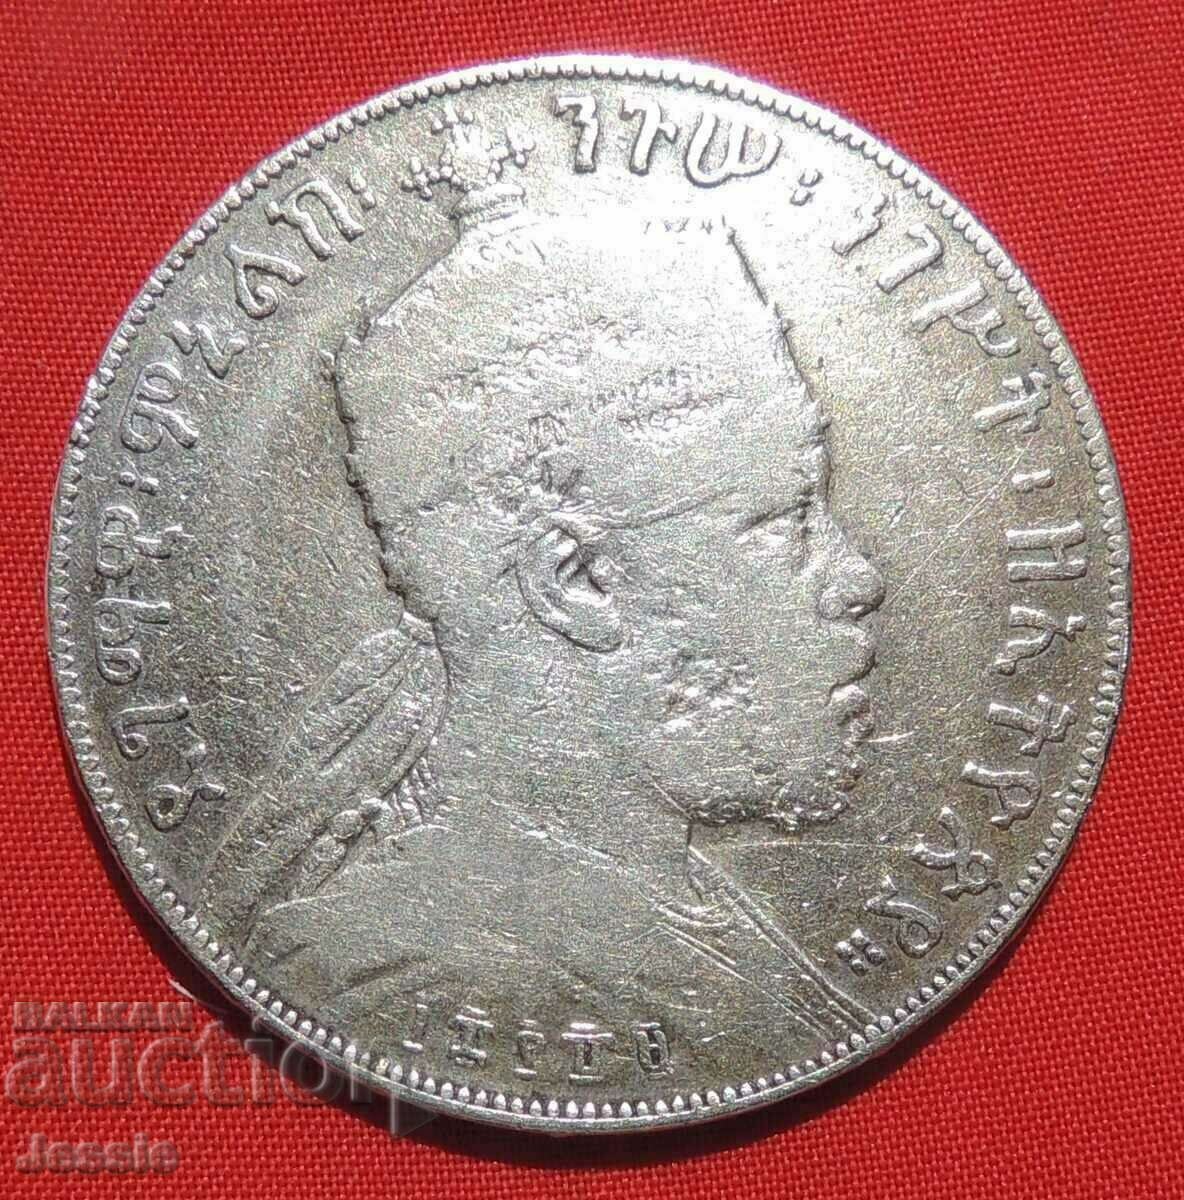 1 Birr 1903 Ethiopia Menelik II